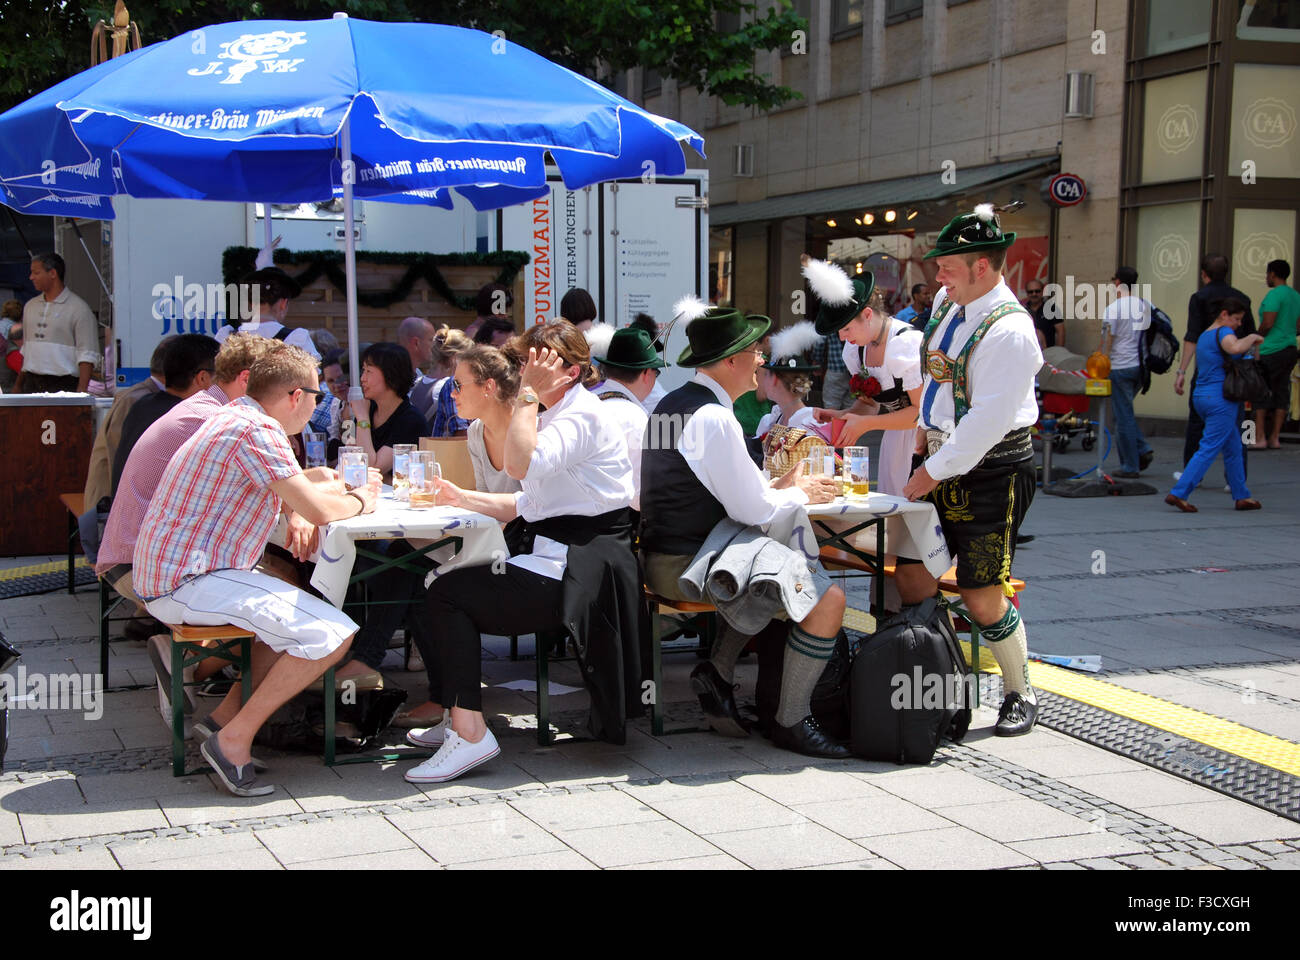 München-Juli 07: Menschen, die Bären, die auf der Straße sitzen. Einige gekleidet in bayerischer Tracht Kleidung teilweise mit Stockfoto